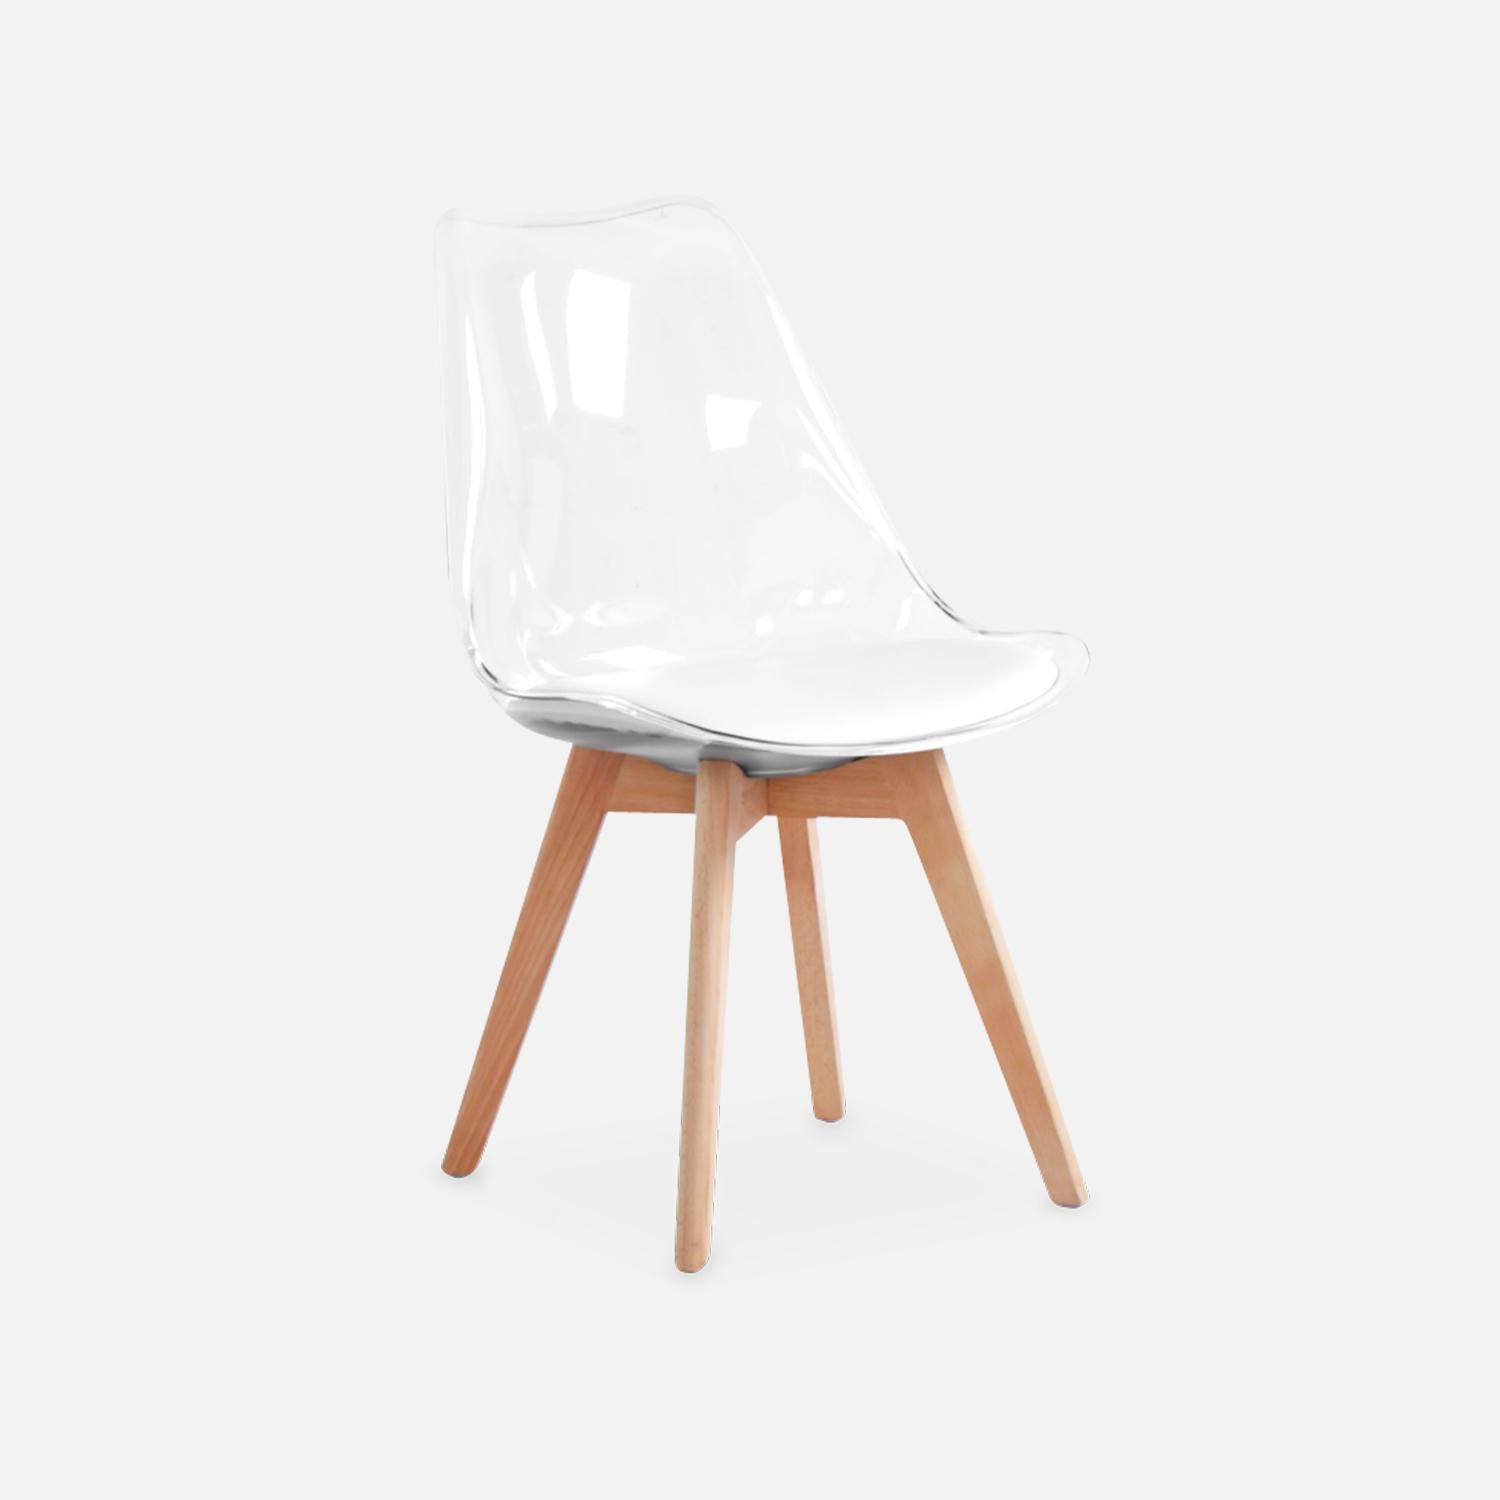 Juego de 4 sillas escandinavas - Lagertha - patas de madera, asientos individuales, cojín blanco, carcasa transparente  Photo5